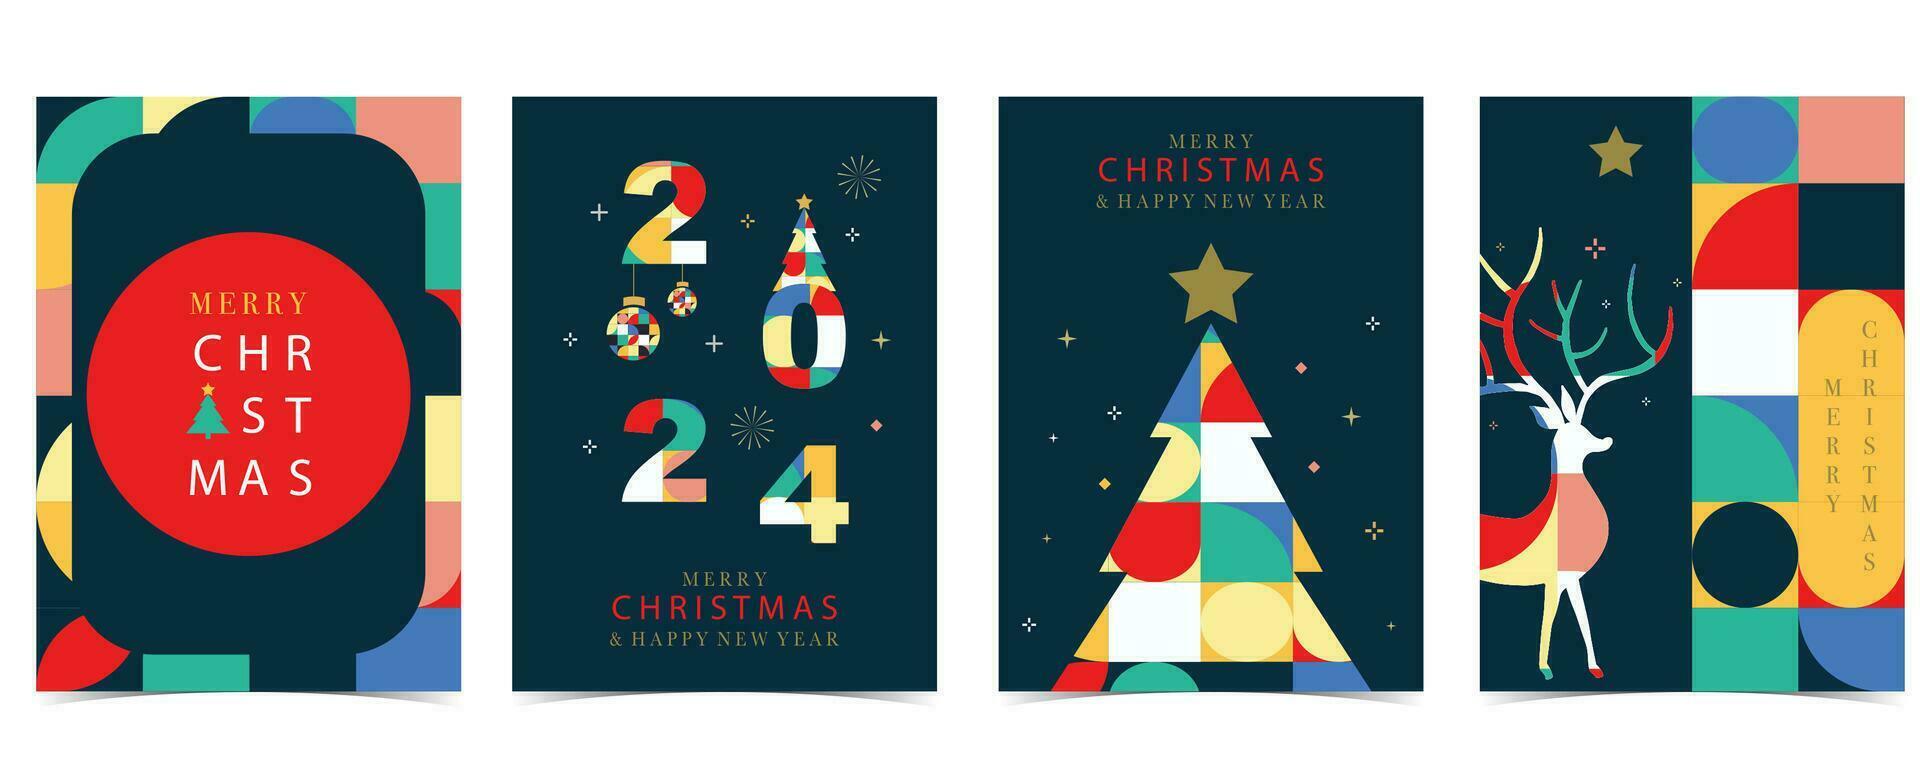 Weihnachten geometrisch Hintergrund mit Weihnachten Baum, Rentier.bearbeitbar Vektor Illustration zum Postkarte, A4 Größe